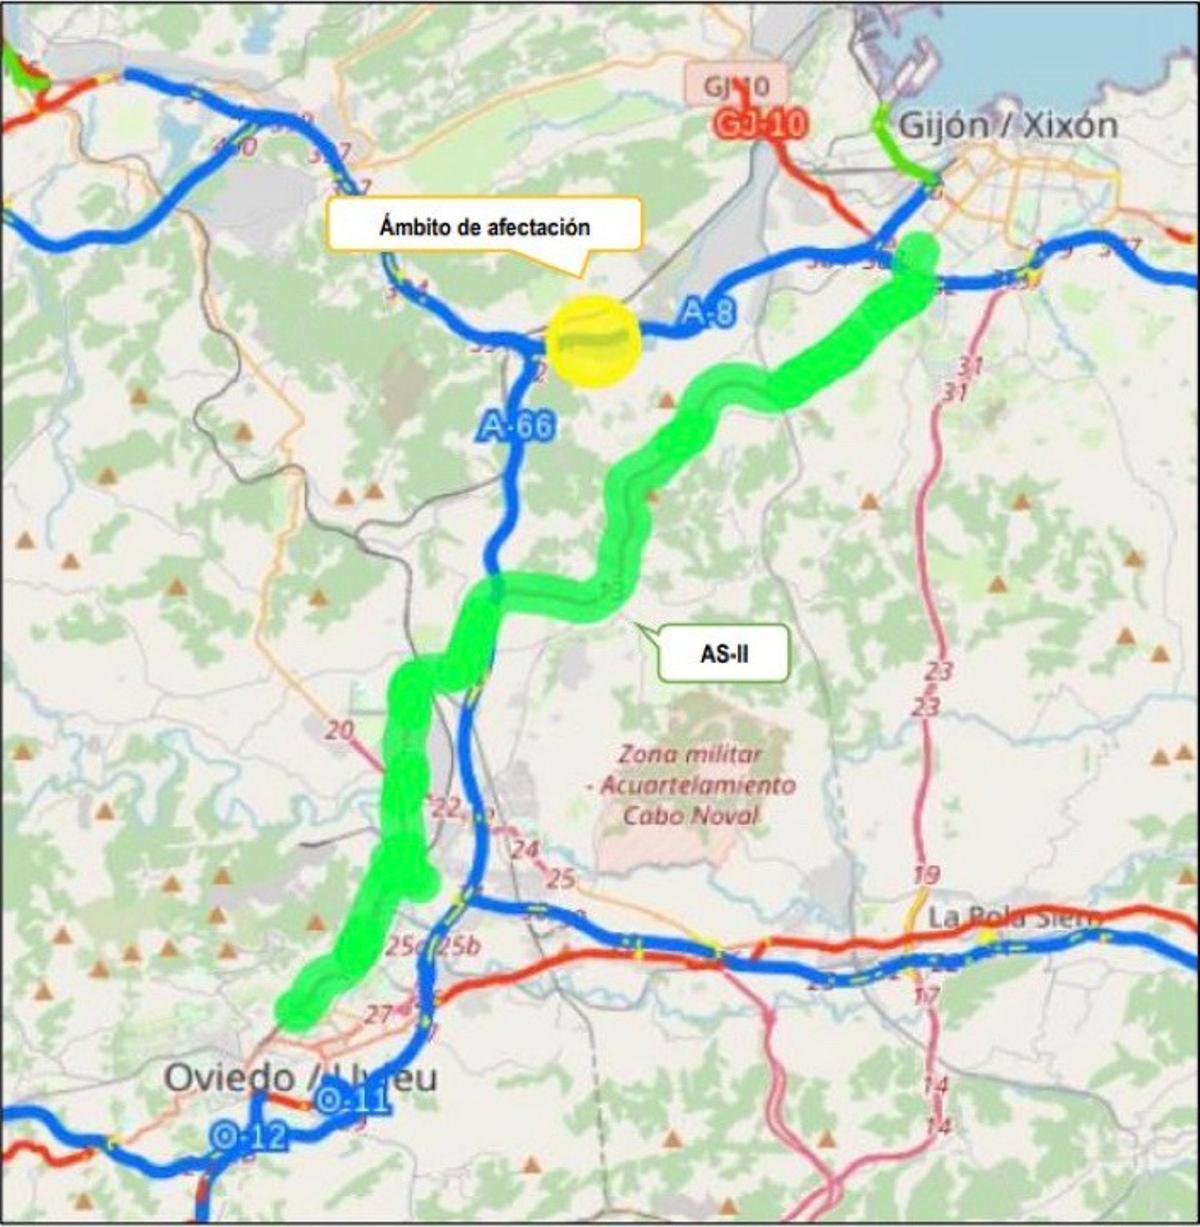 La zona afectada por las obras (en amarillo) y la alternativa propuesta (en verde).